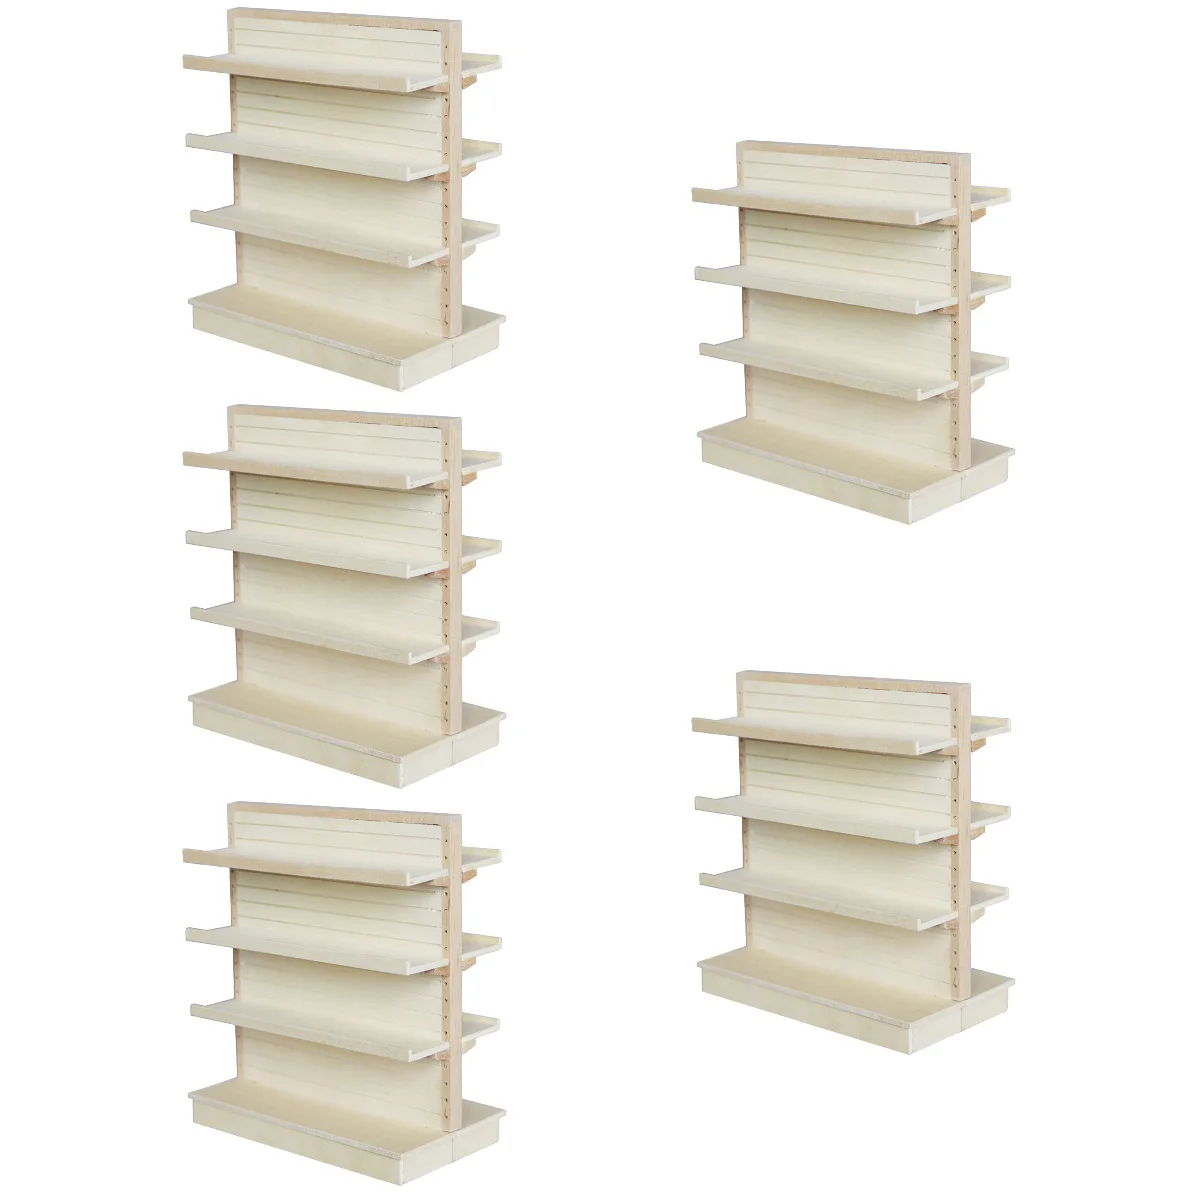 

5 PCS Miniature Furniture Supermarket Shelves Shelf Models Things House Child